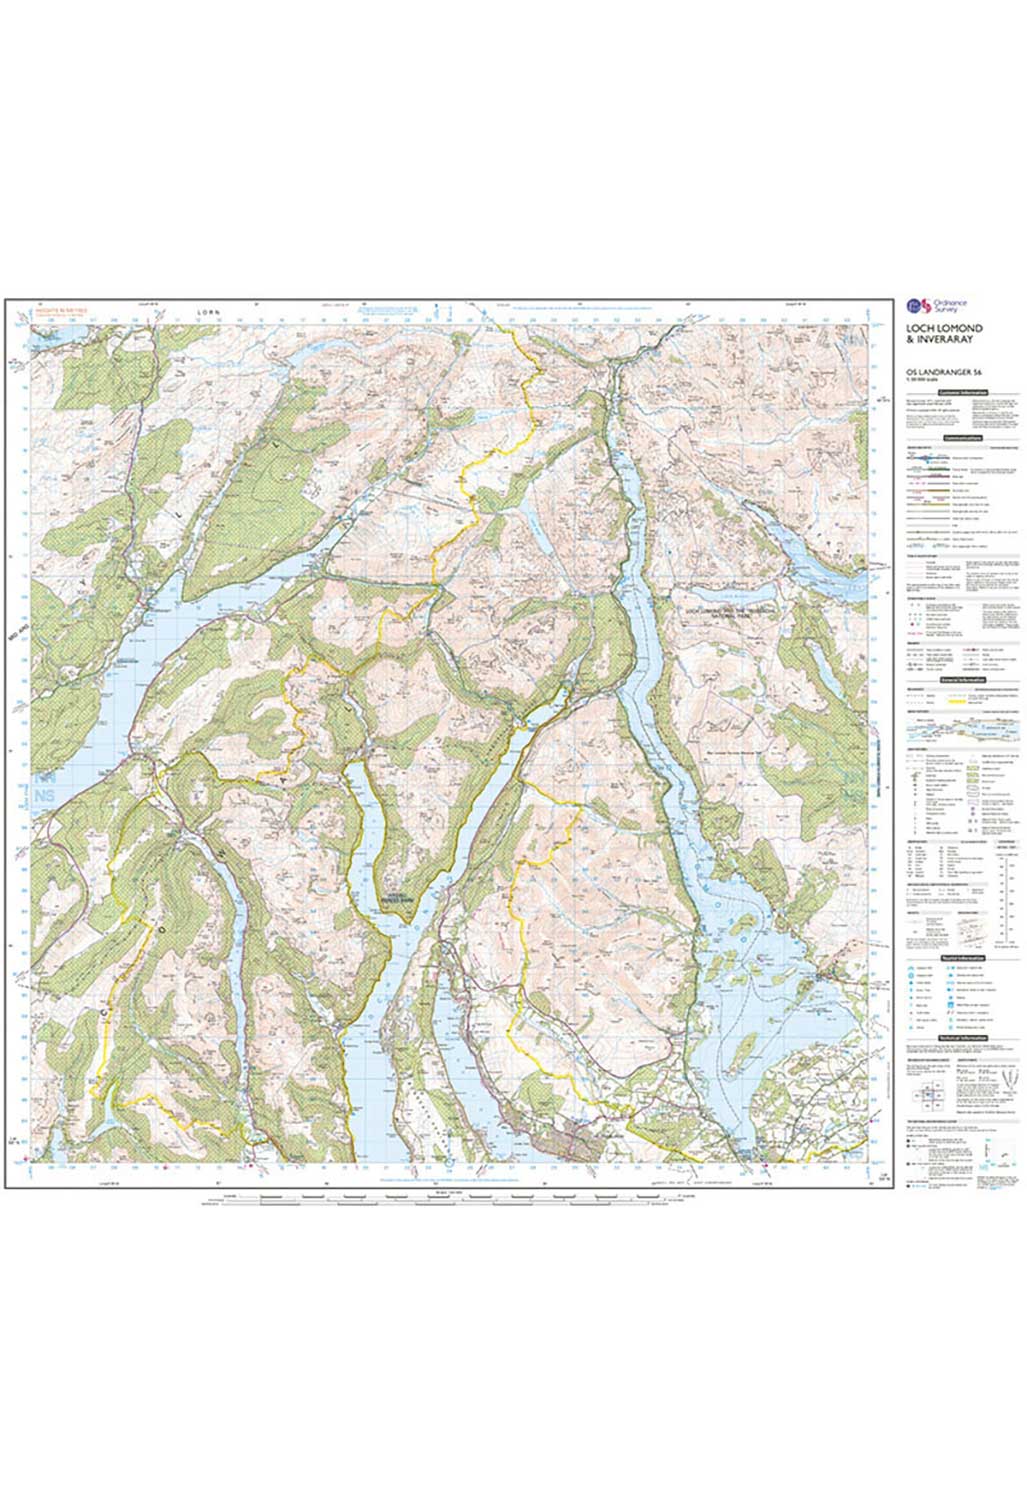 Ordnance Survey Loch Lomond & Inveraray - Landranger 56 Map